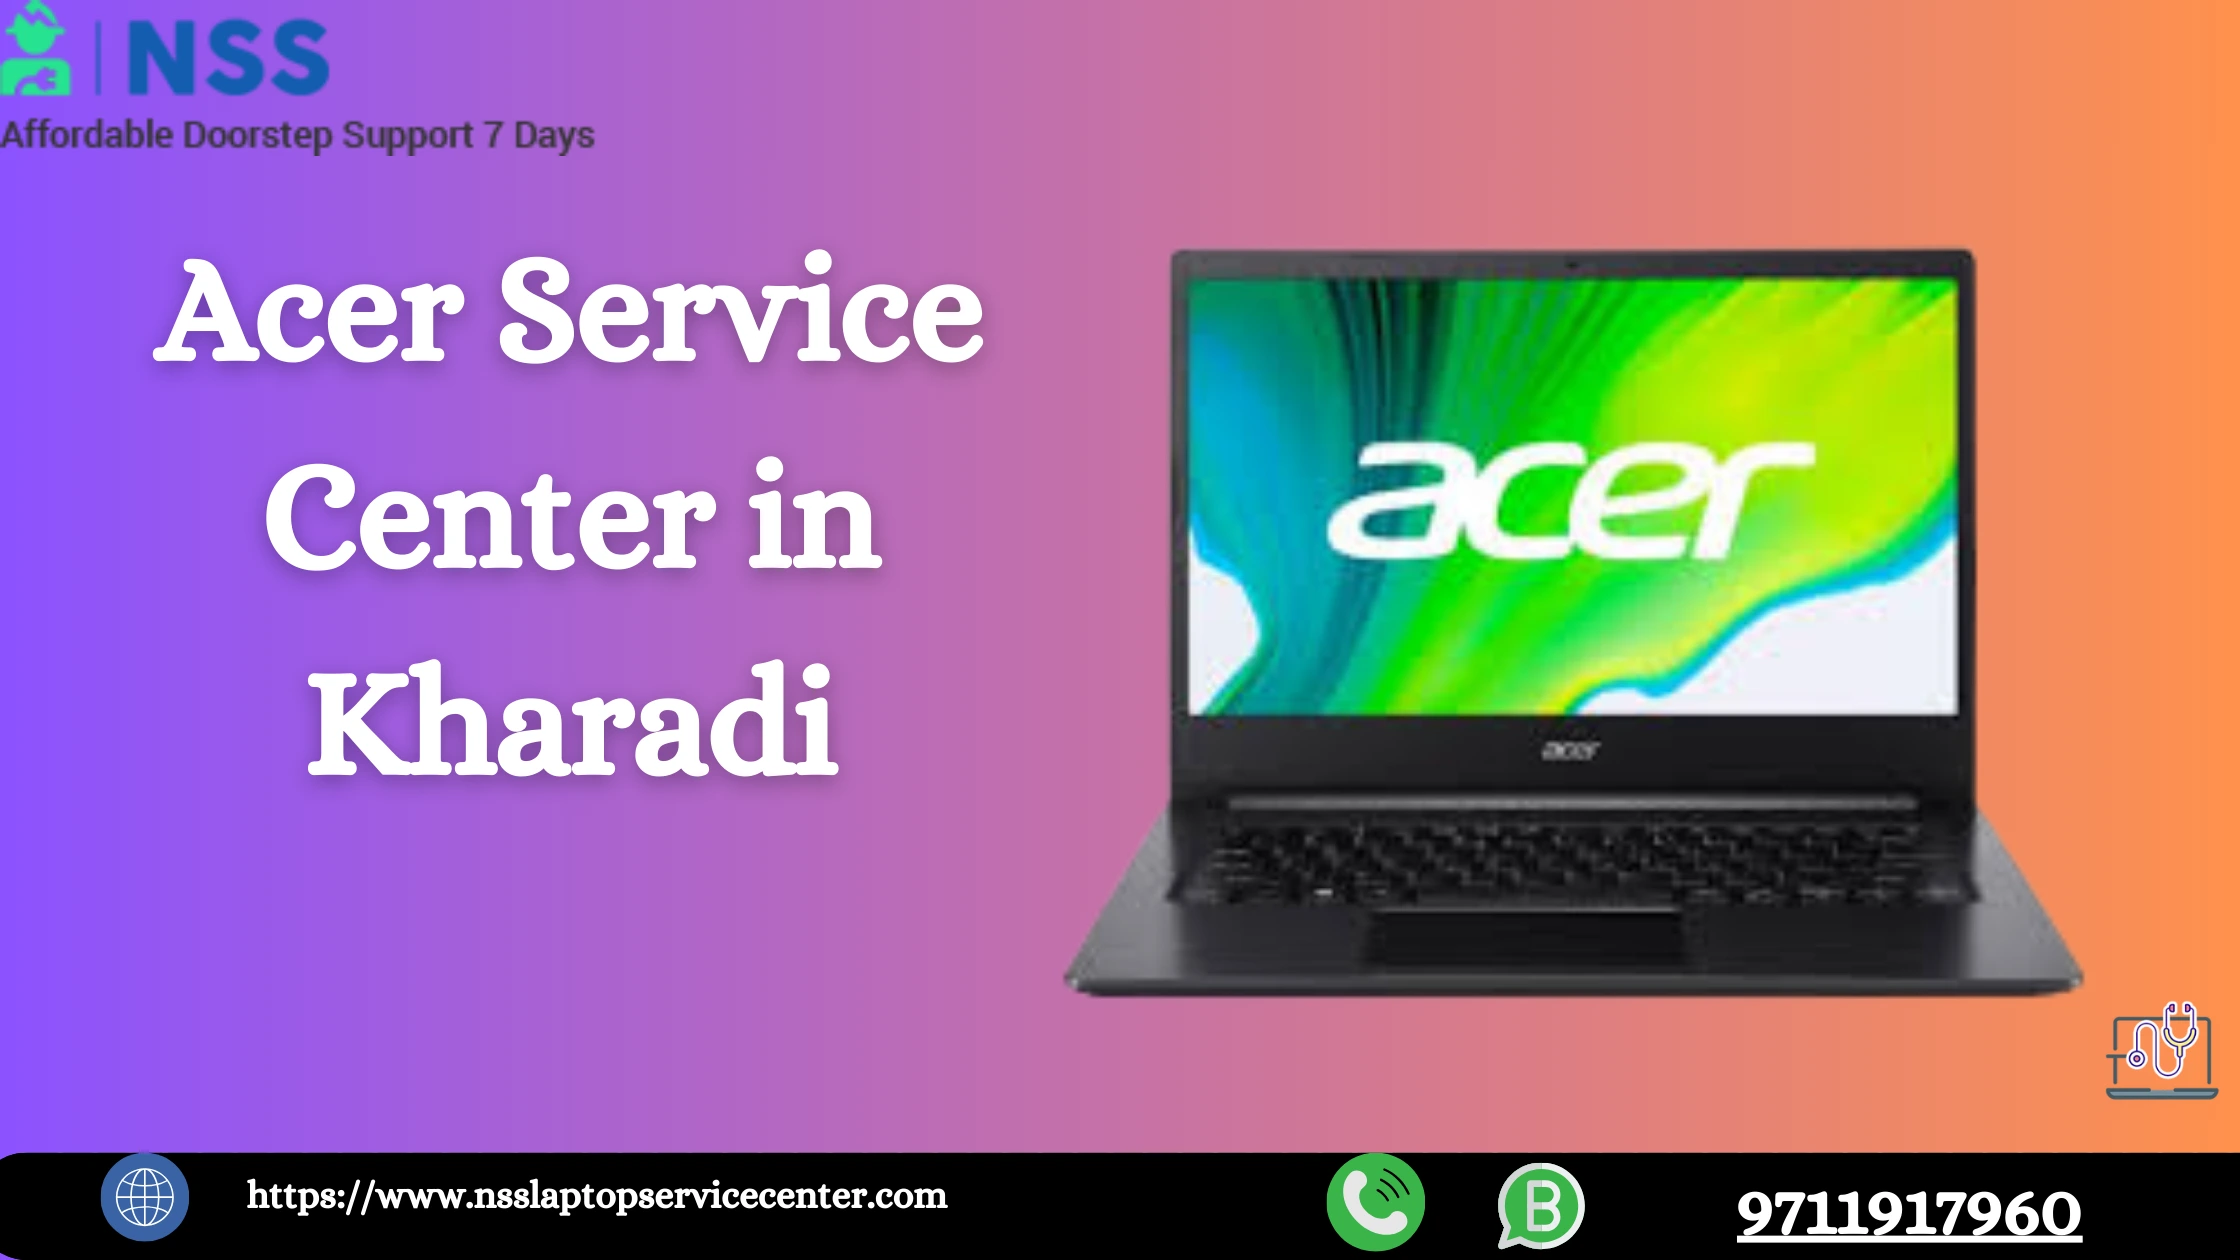 Acer Service Center in Kharadi, Pune